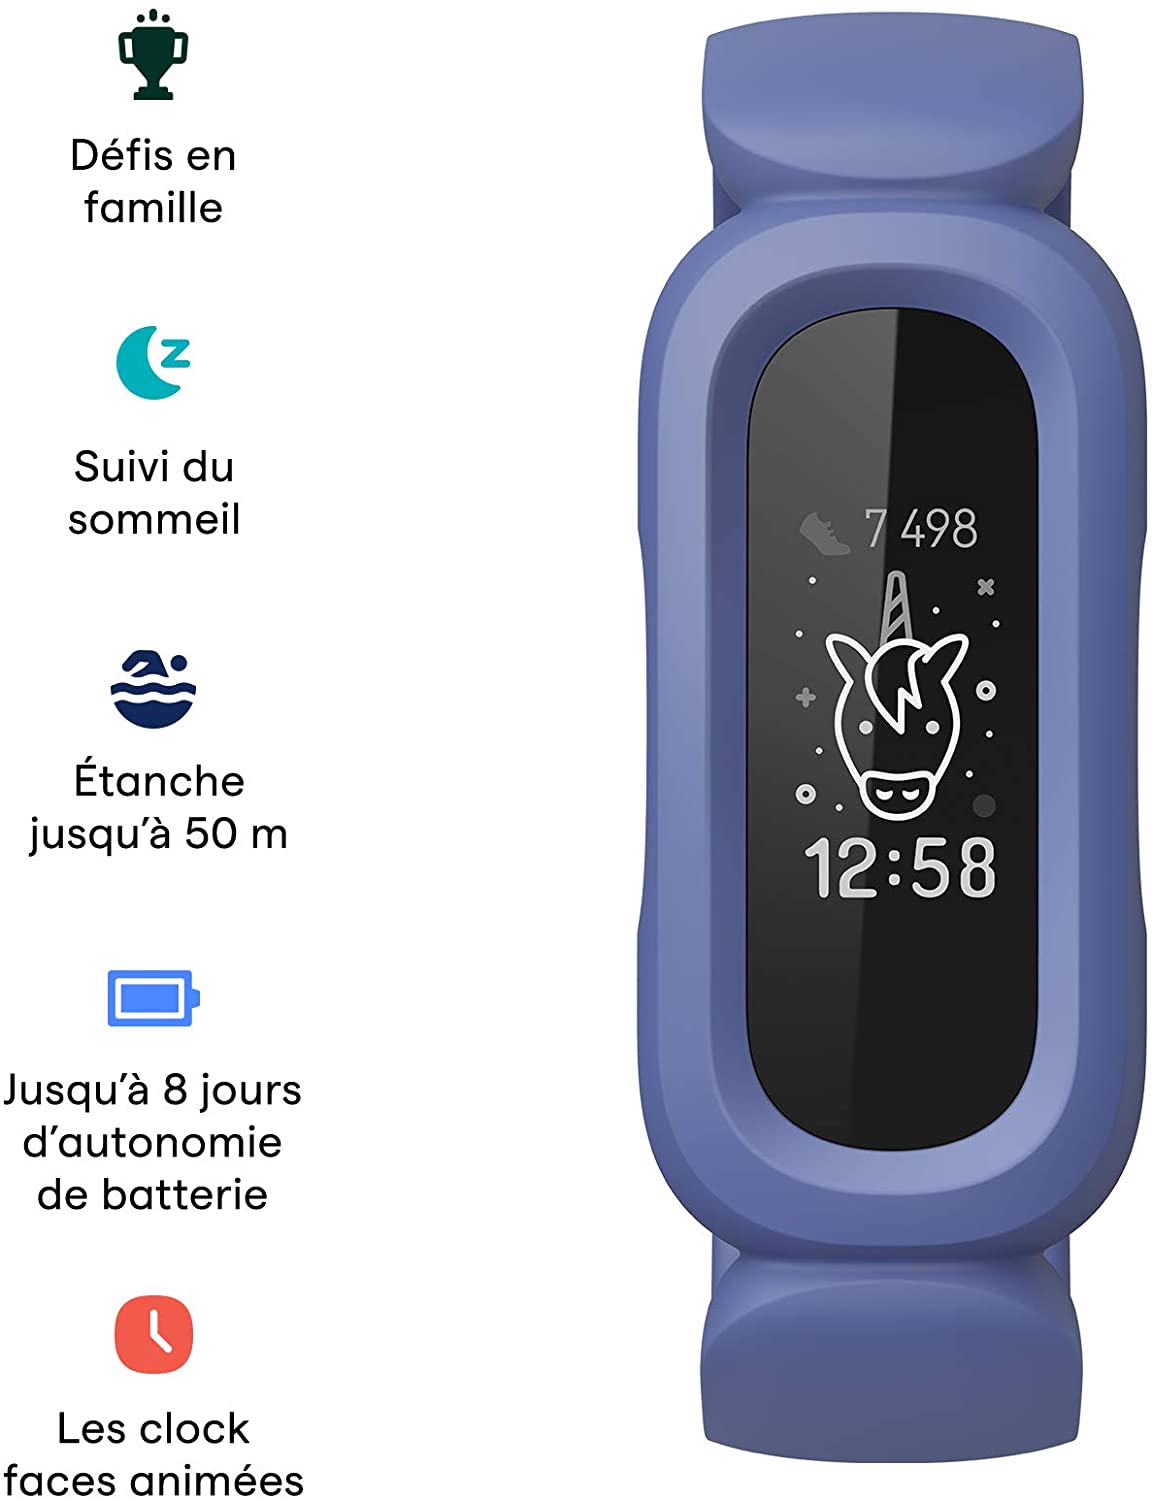 Bracelet d'activité pour enfants Fitbit Ace 3